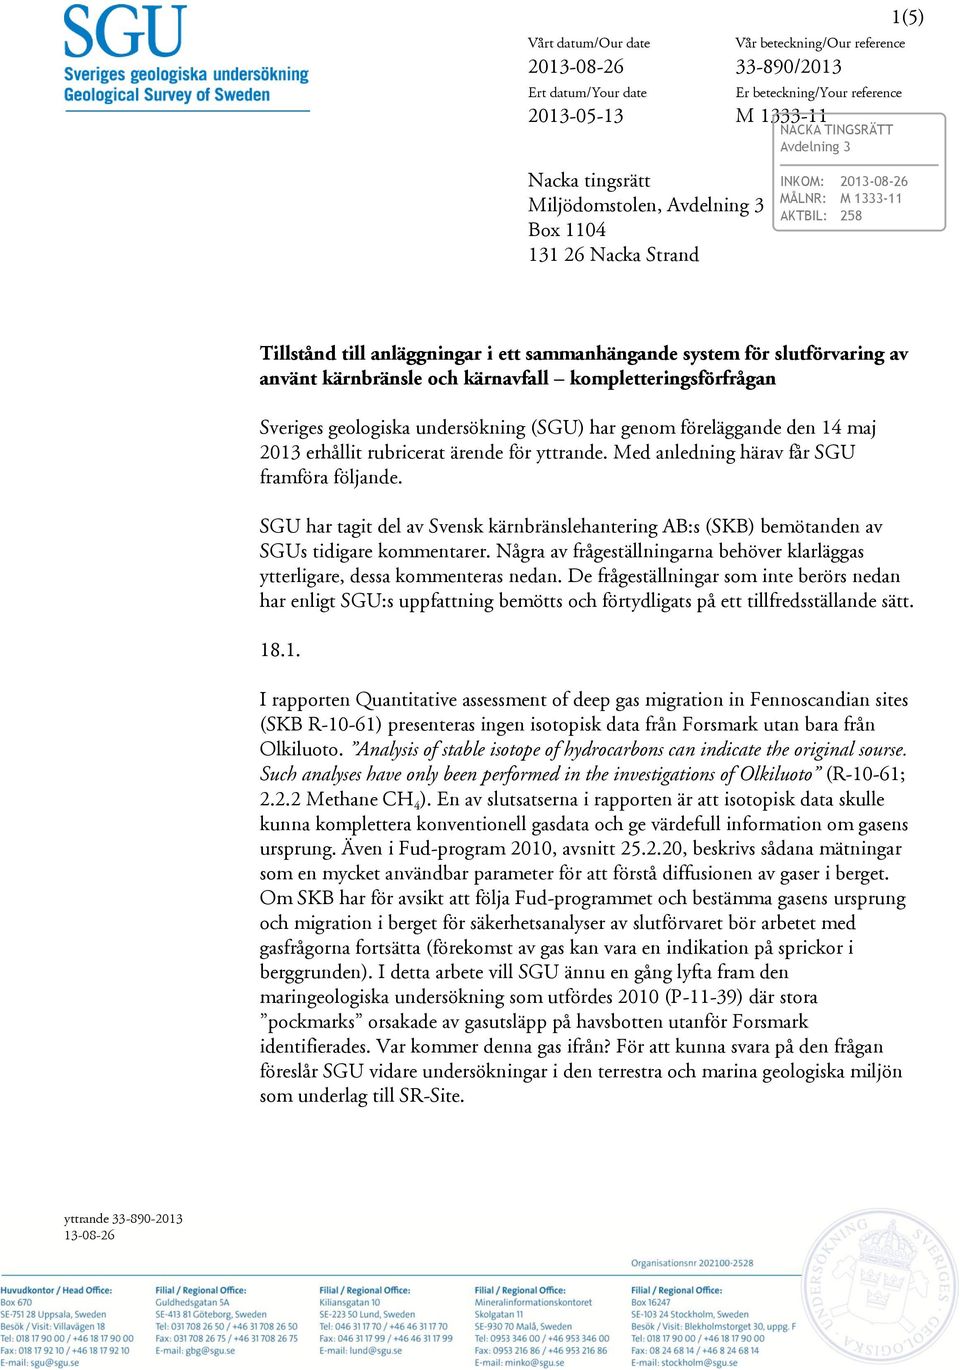 kärnavfall kompletteringsförfrågan Sveriges geologiska undersökning (SGU) har genom föreläggande den 14 maj 2013 erhållit rubricerat ärende för yttrande. Med anledning härav får SGU framföra följande.